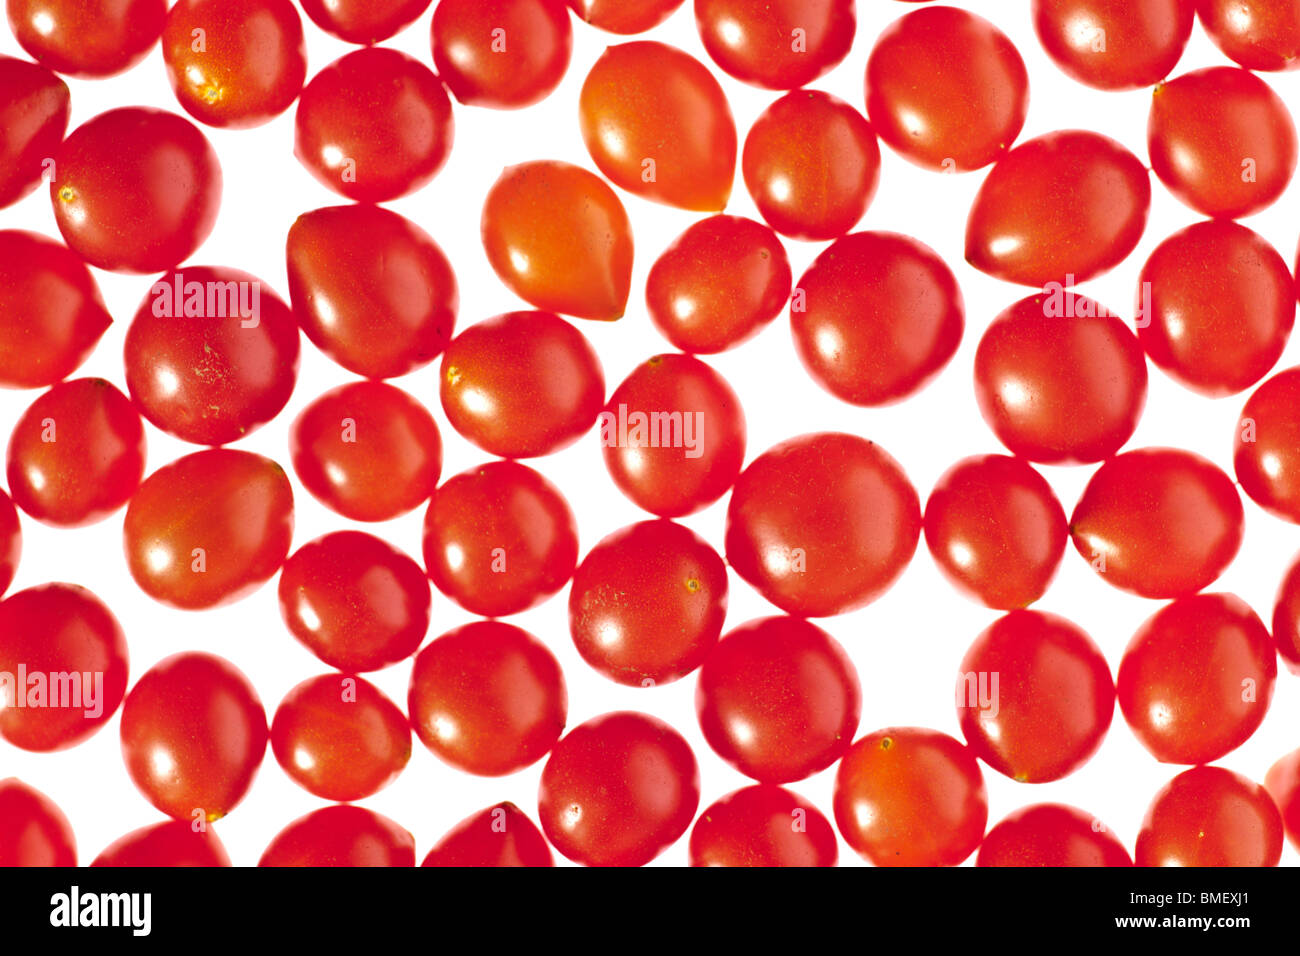 Tas de petites tomates tomberries Banque D'Images